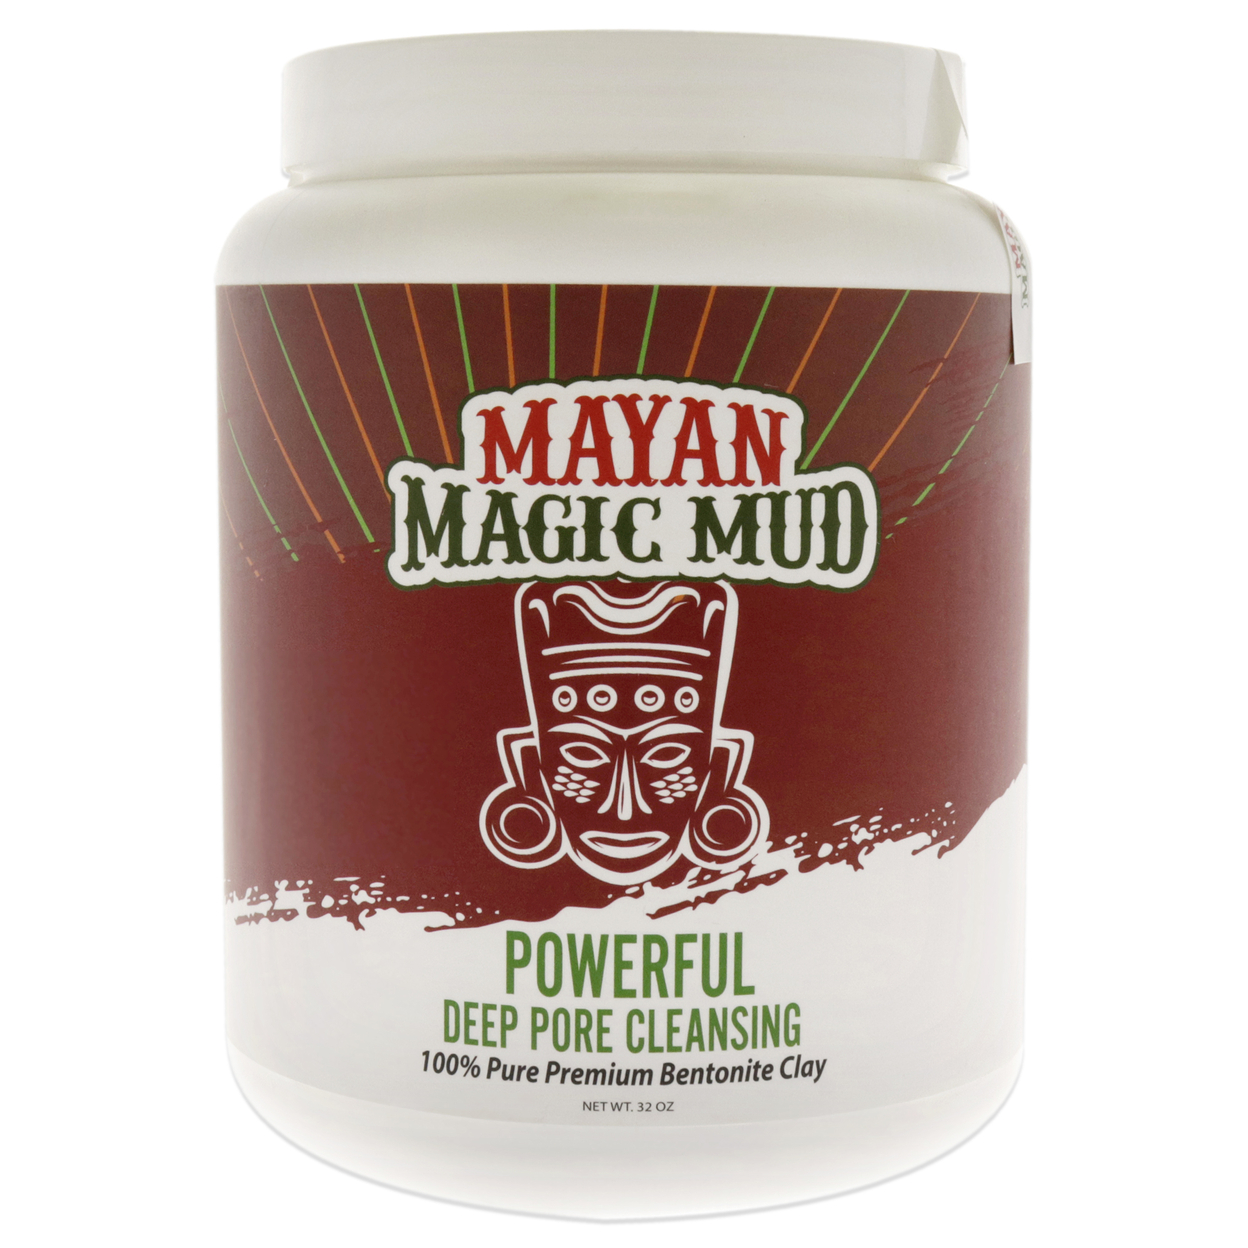 Mayan Magic Mud Powerful Deep Pore Cleansing Sodium Bentonite Clay Cleanser 32 Oz